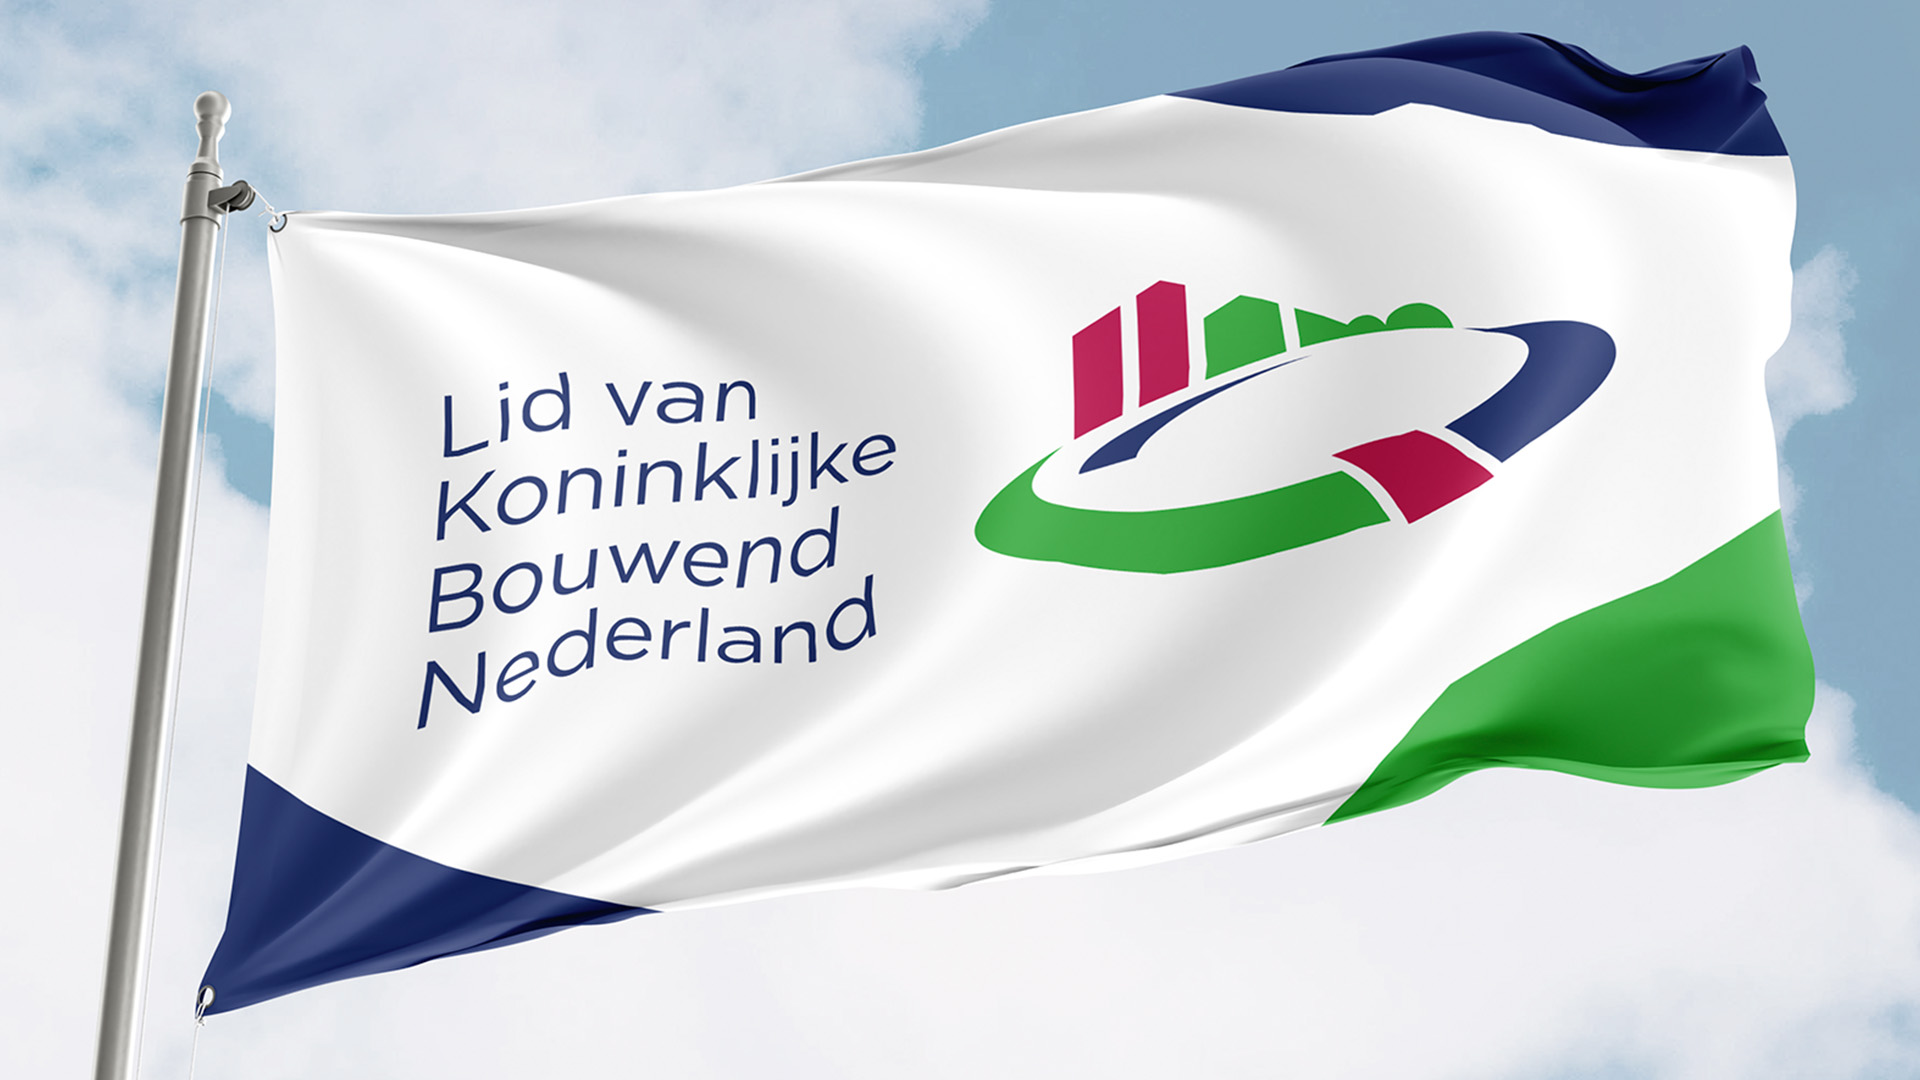 Het Bouwend Nederland logo op een wapperende vlag